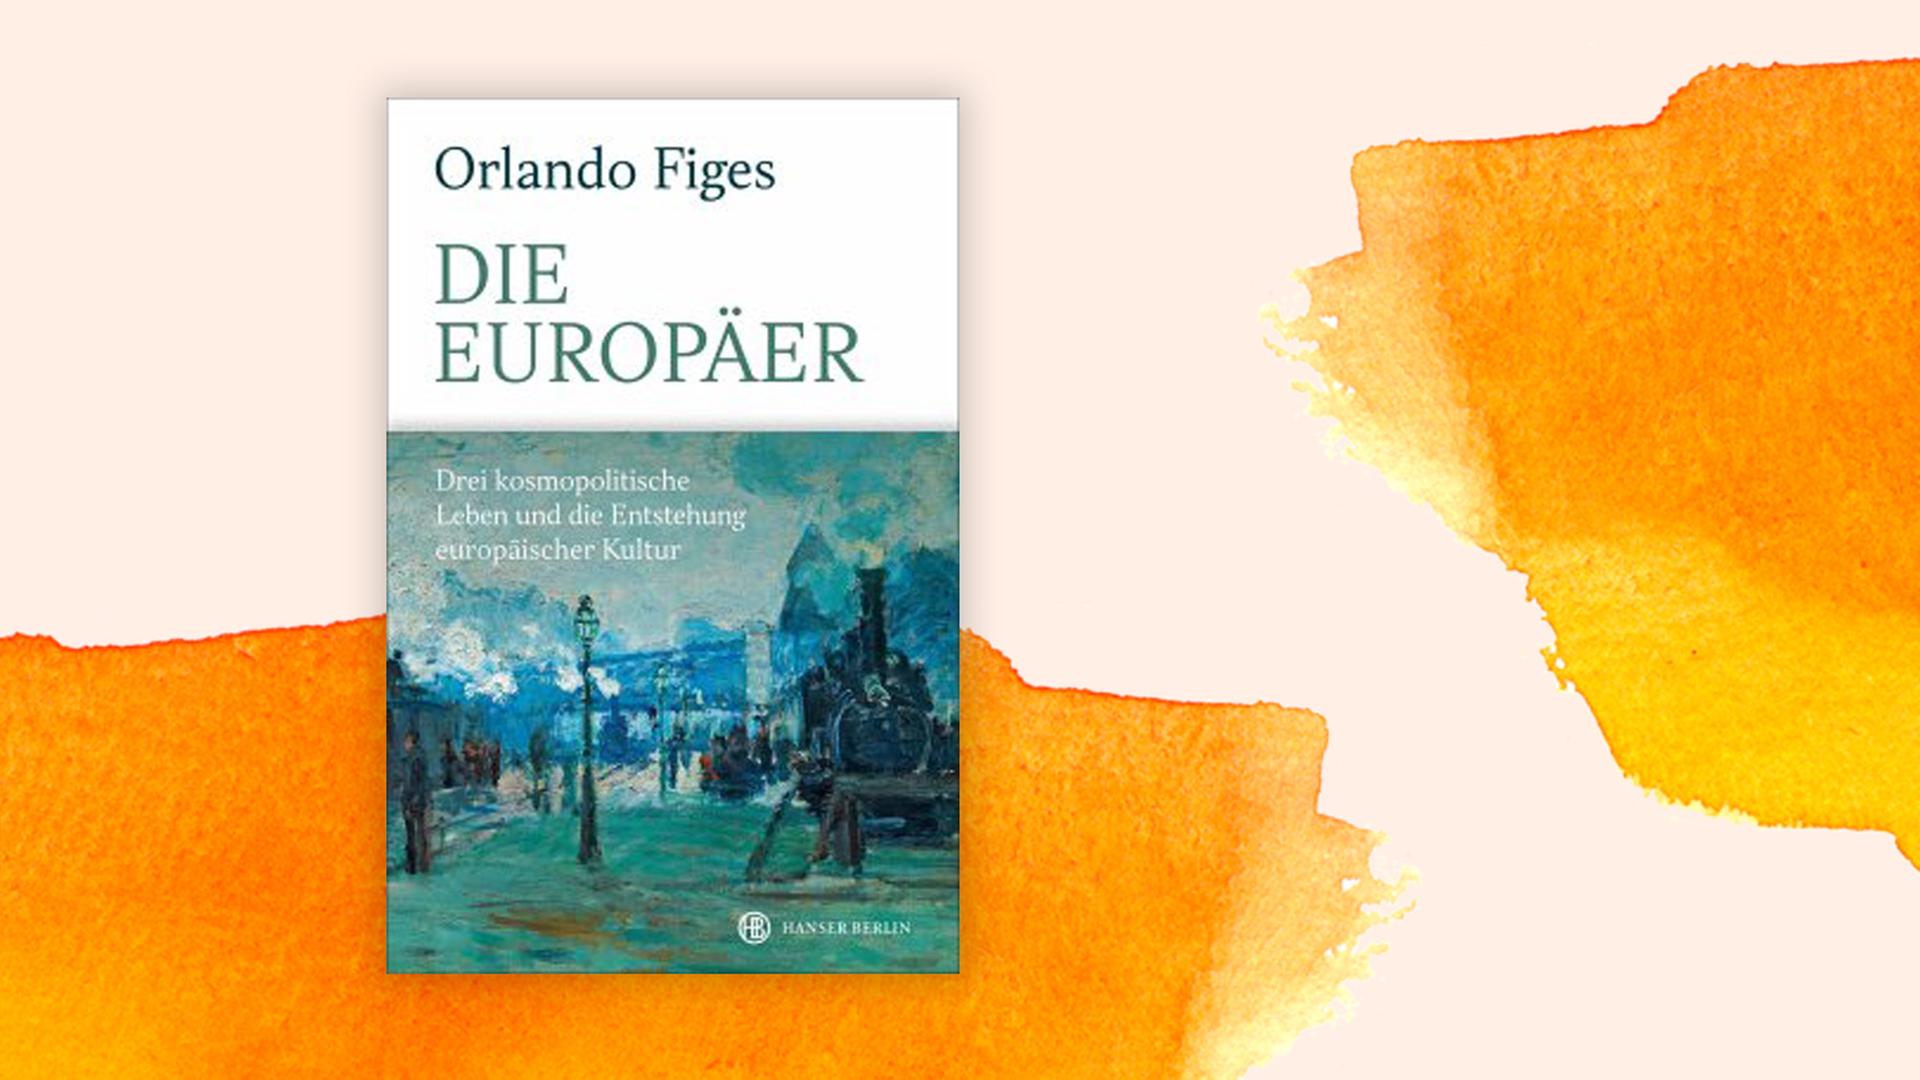 Cover: Orlando Figes "Die Europäer" vom Hanser Verlag